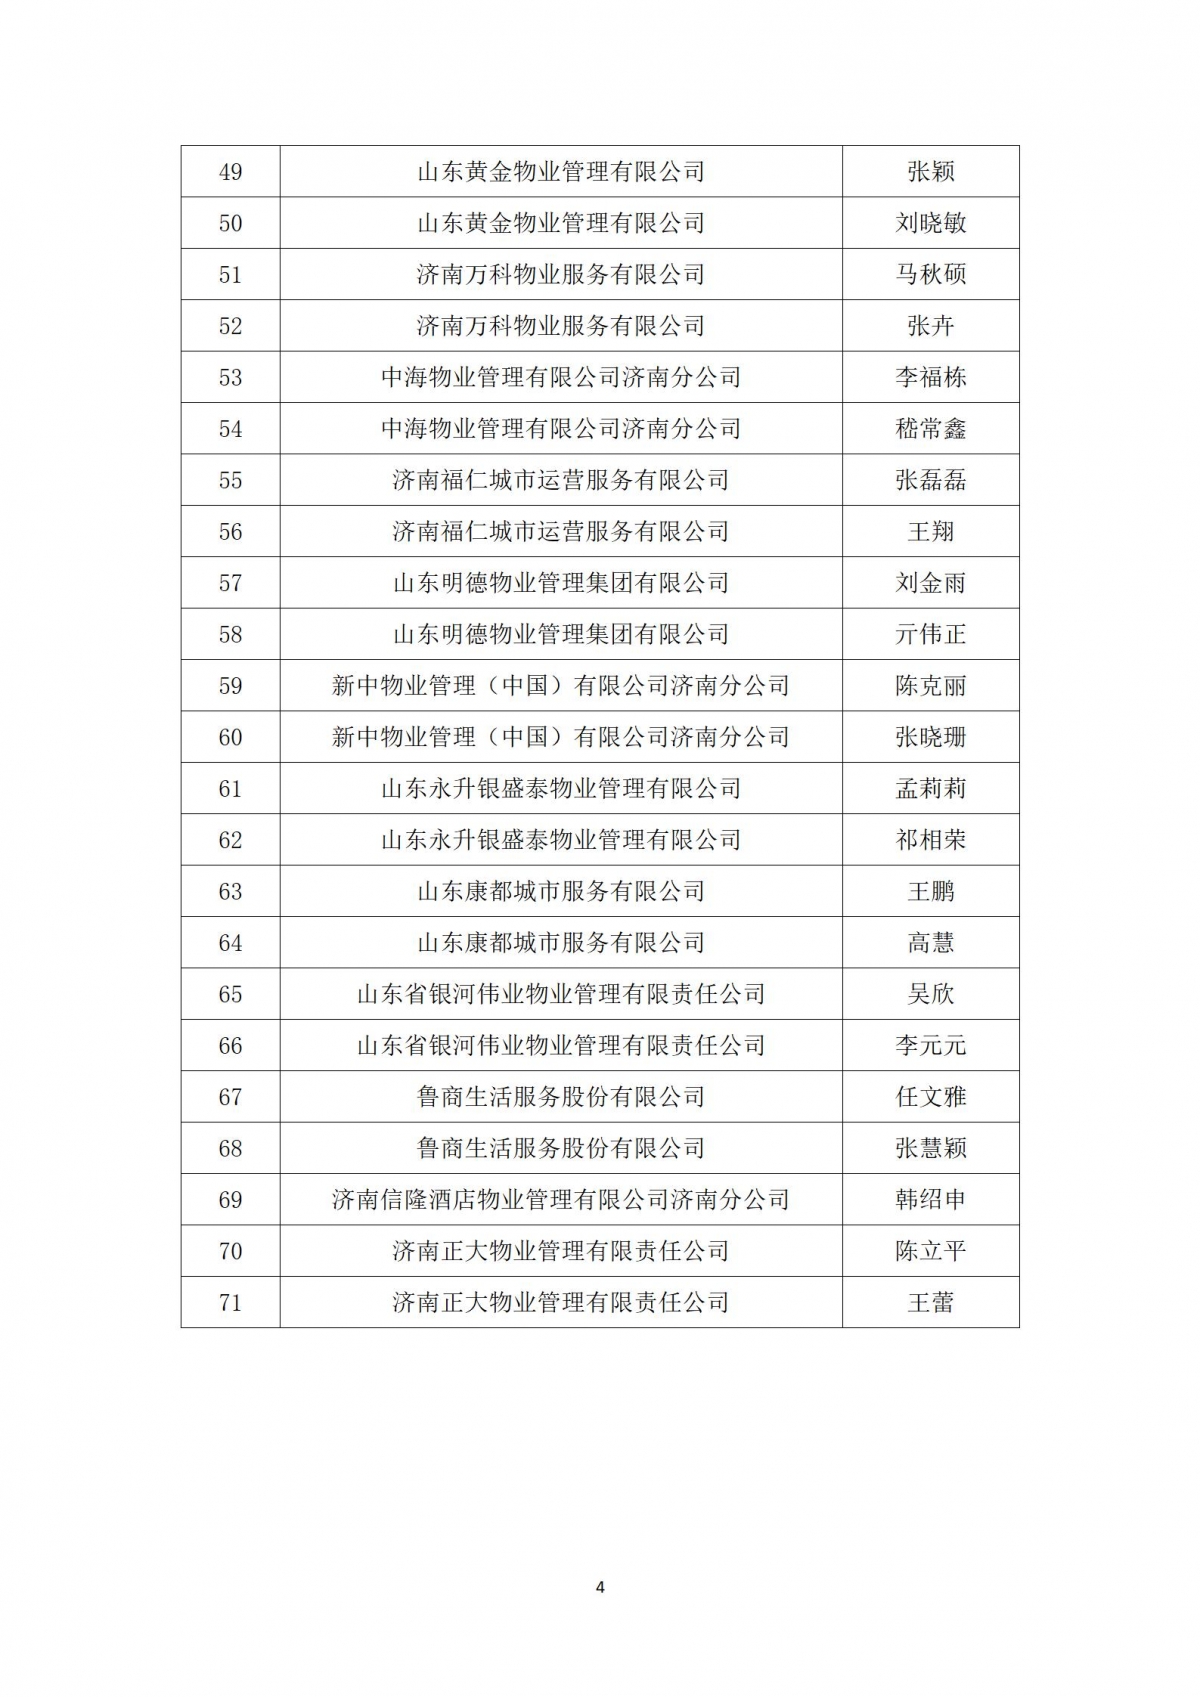 关于“天城杯”第七届济南市物业服务行业职业技能竞赛选手名单的公示_04